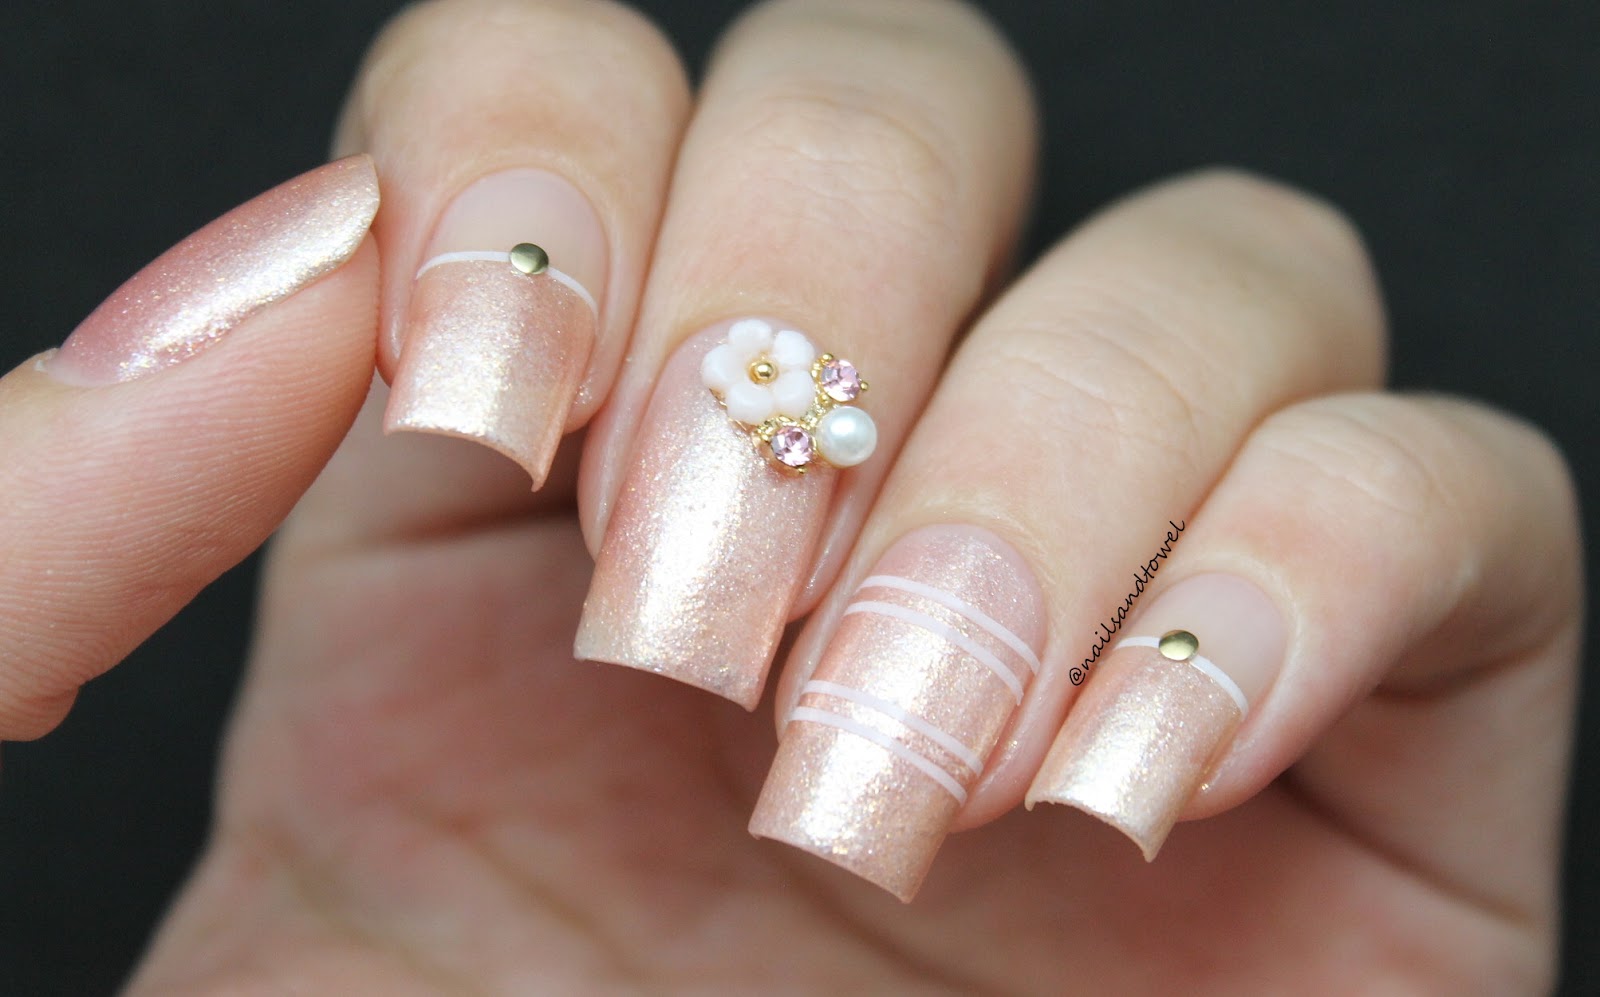 1. Romantic Floral Nail Art Design - wide 2